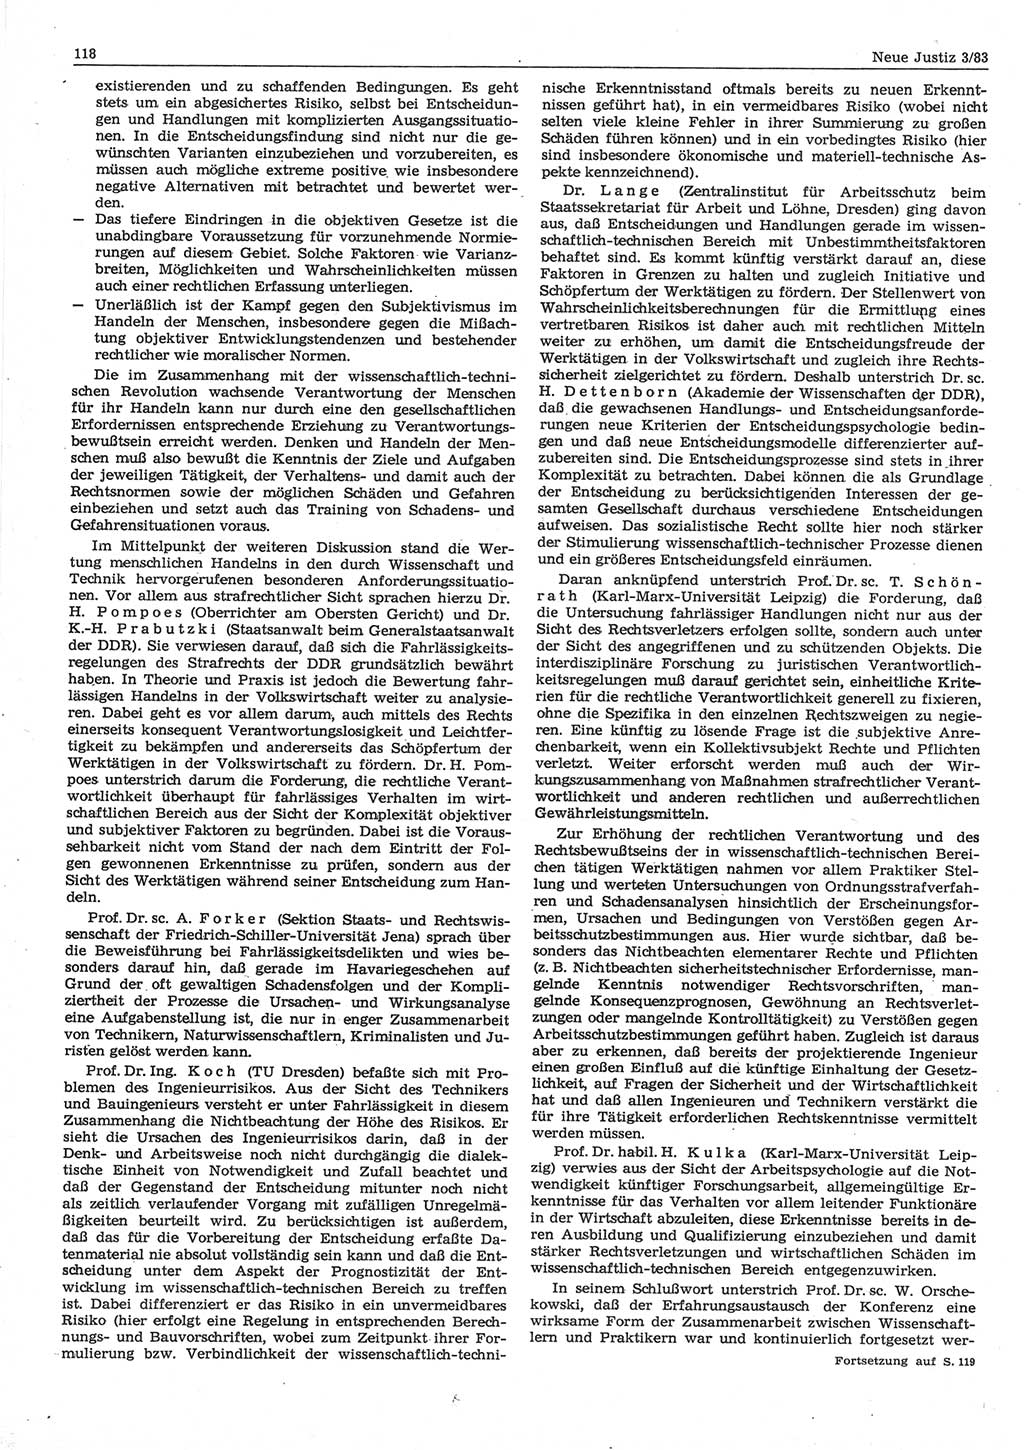 Neue Justiz (NJ), Zeitschrift für sozialistisches Recht und Gesetzlichkeit [Deutsche Demokratische Republik (DDR)], 37. Jahrgang 1983, Seite 118 (NJ DDR 1983, S. 118)